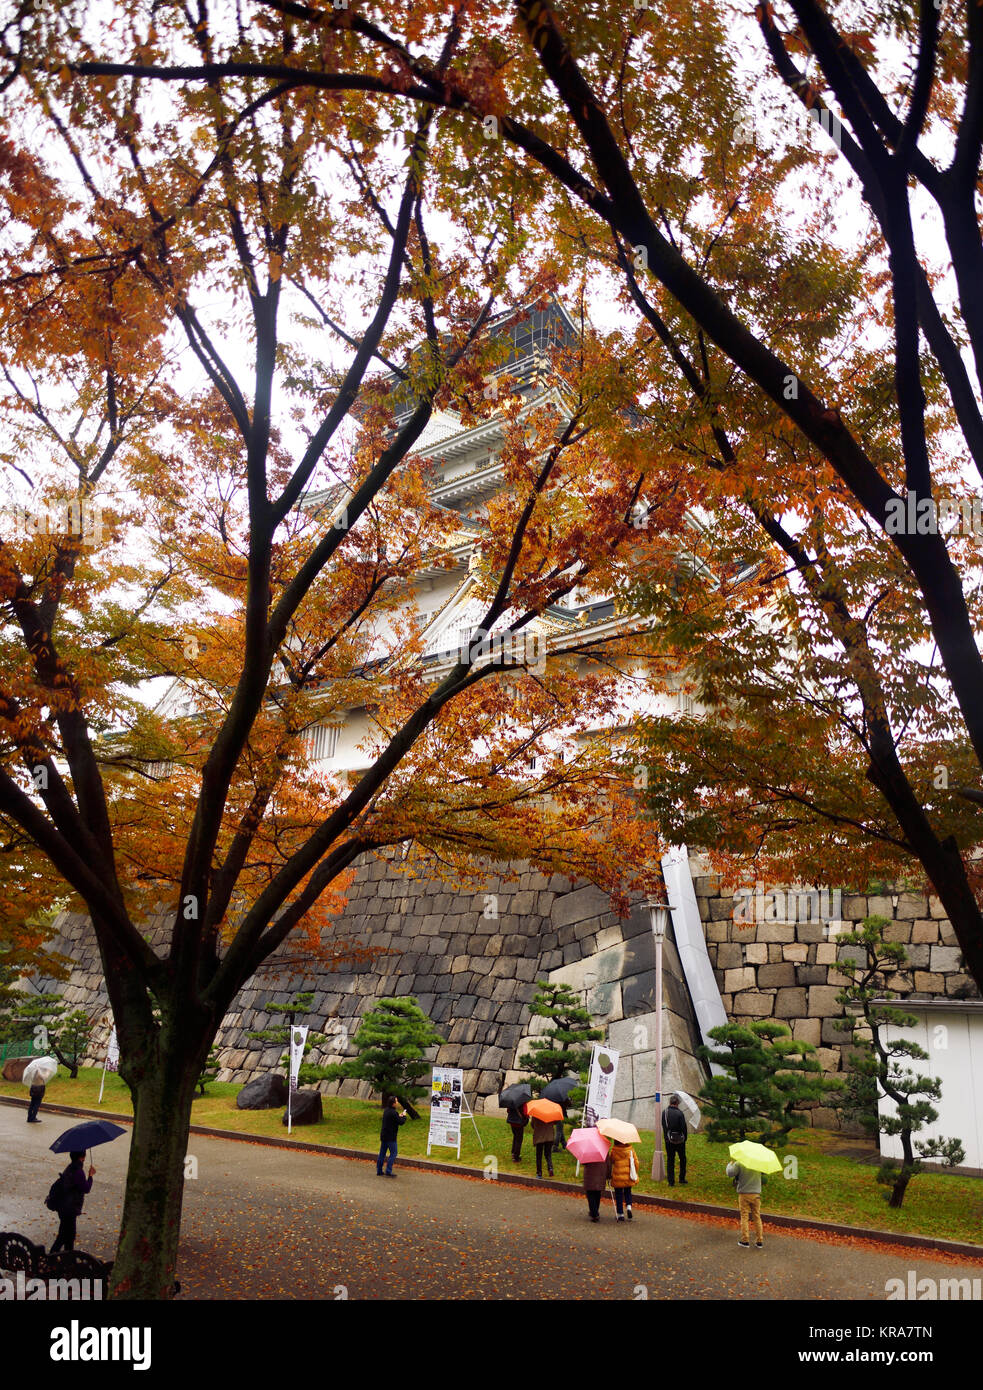 Les gens avec des parasols au château d'Osaka vue historique, Osakajo, caché derrière les feuilles des arbres rouge coloré sur un paisible matin d'automne pluvieux misty. Osaka, Banque D'Images